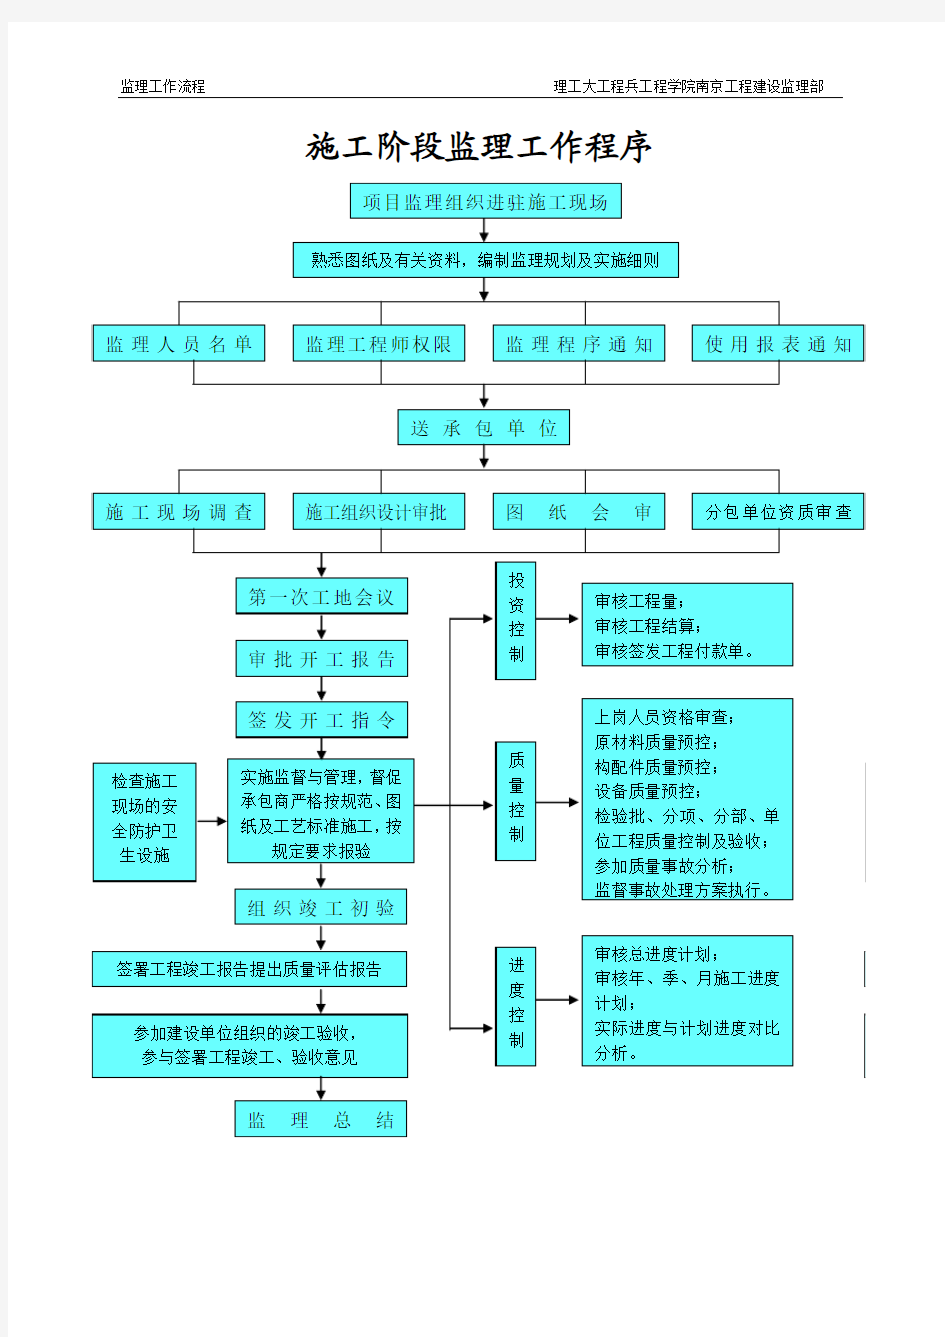 理工大工程兵工程学院南京工程建设监理部监理工作流程